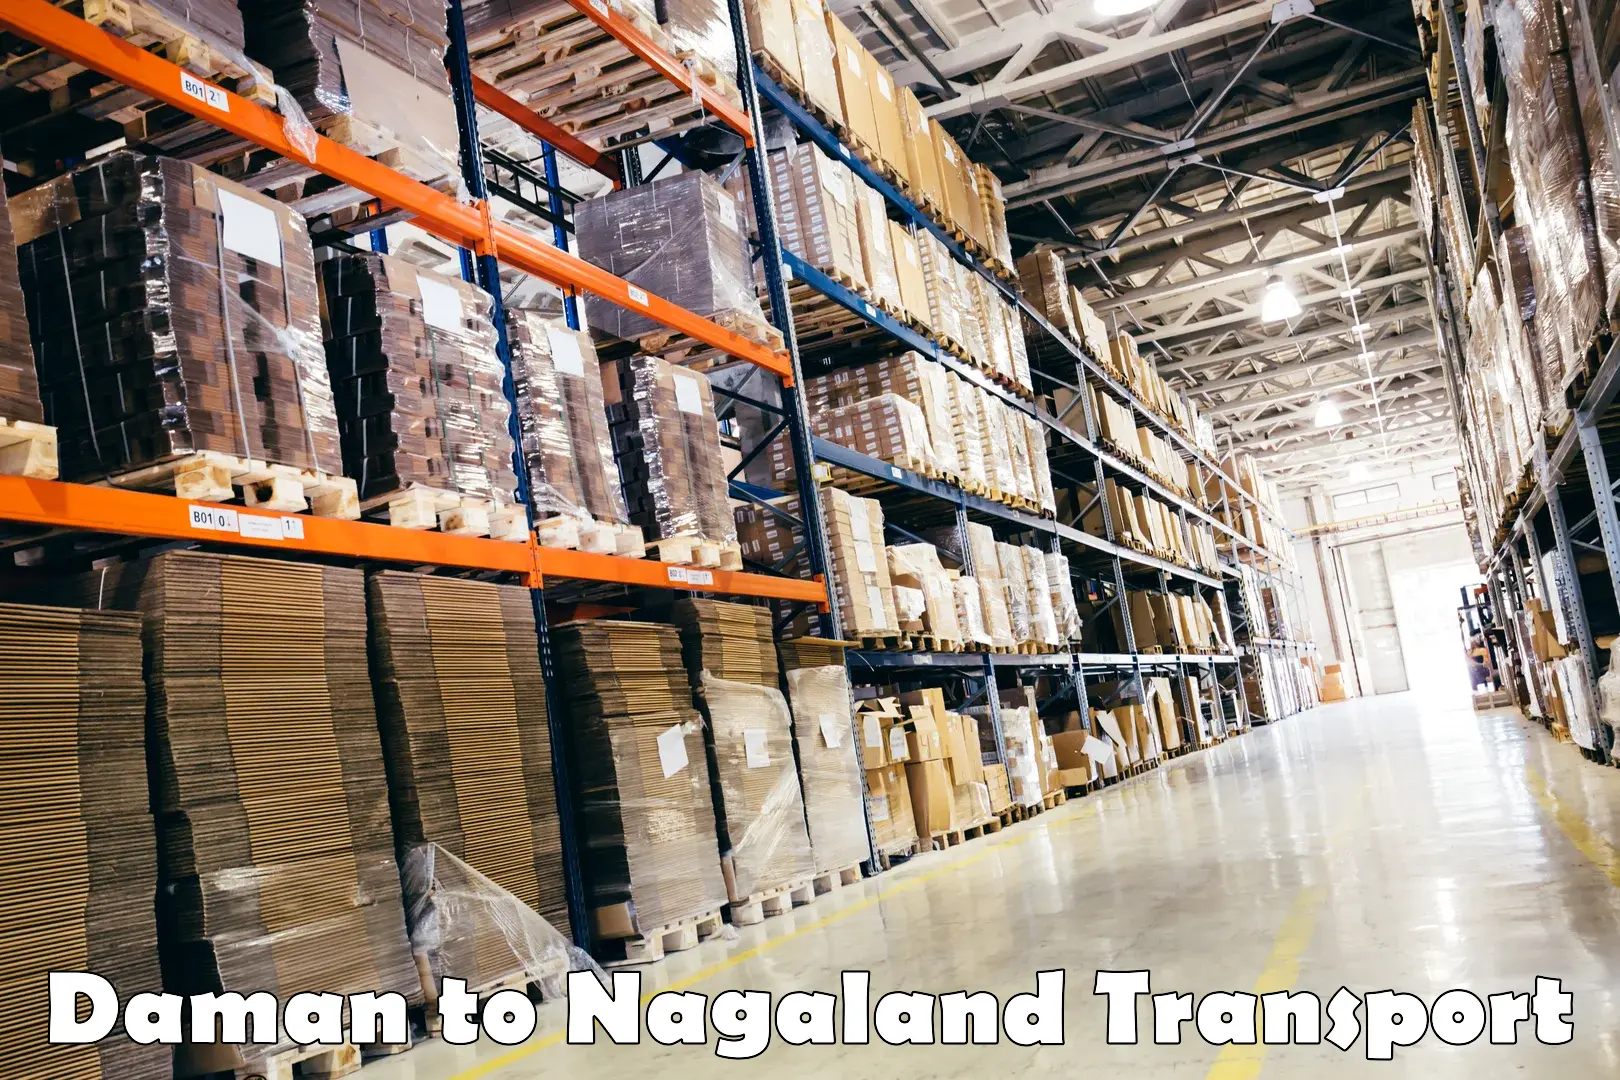 Furniture transport service Daman to Nagaland